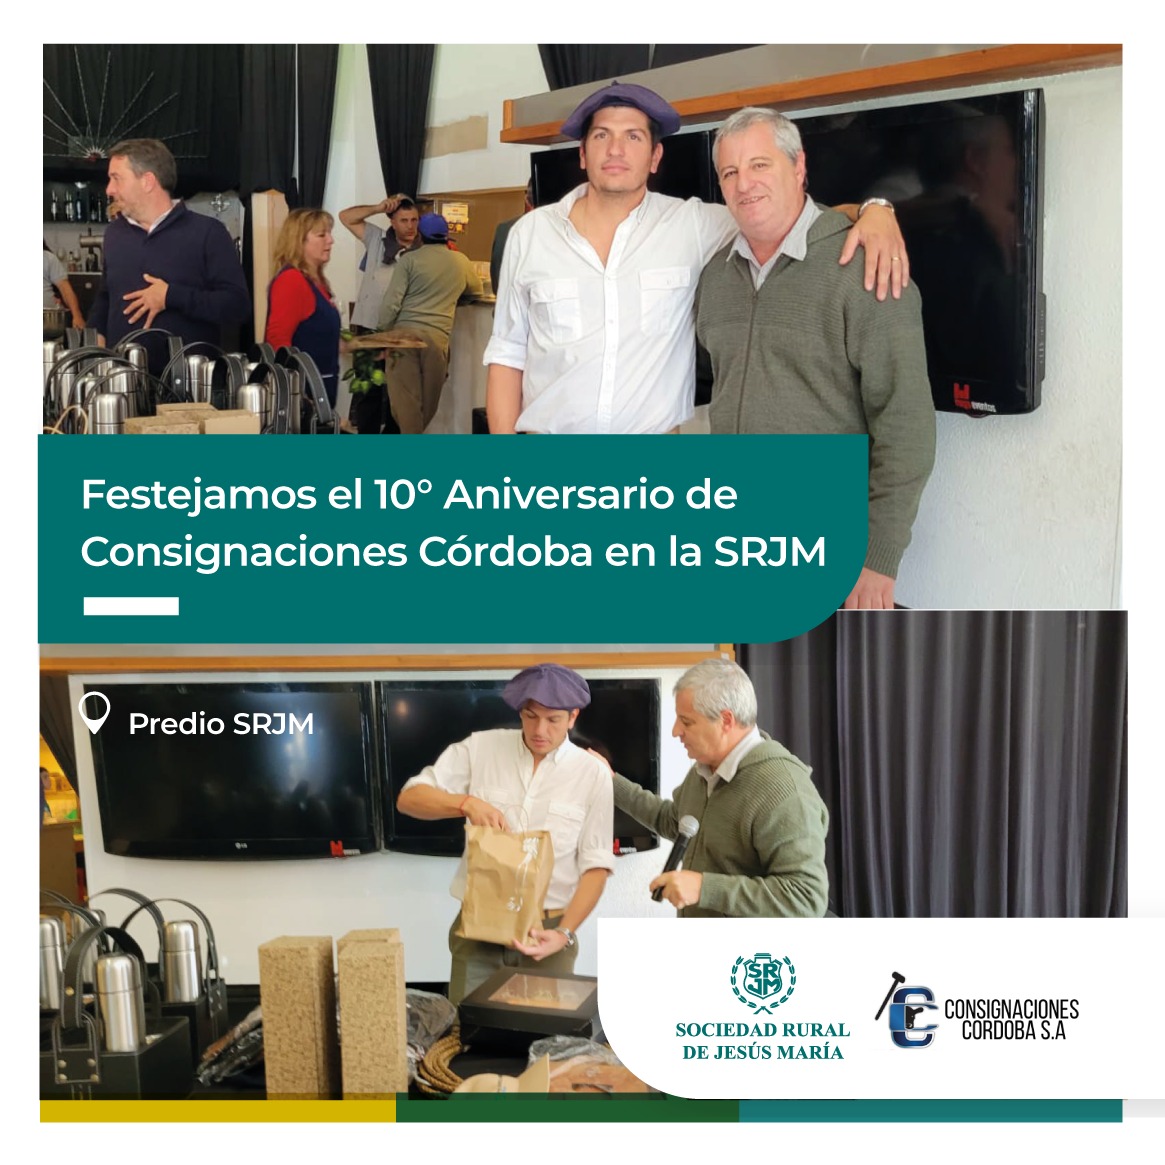 Consignaciones Córdoba celebró su décimo aniversario en la Sociedad Rural de Jesús María

